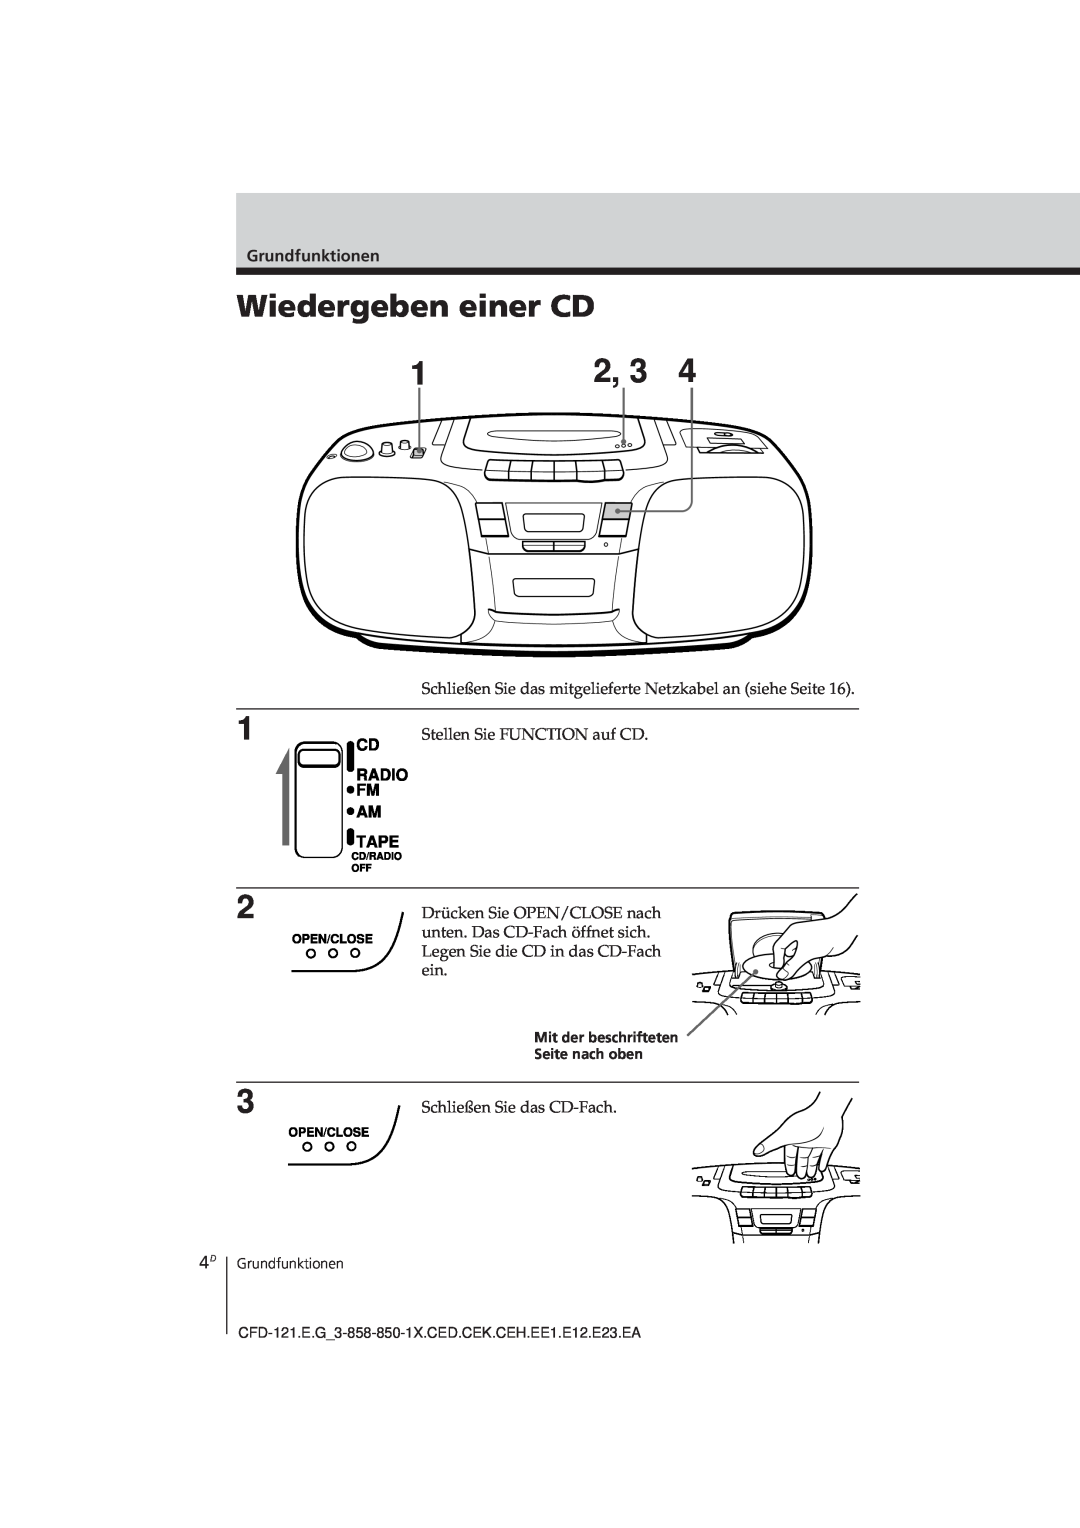 Sony CFD-121 operating instructions Wiedergeben einer CD, Grundfunktionen, Mit der beschrifteten Seite nach oben 